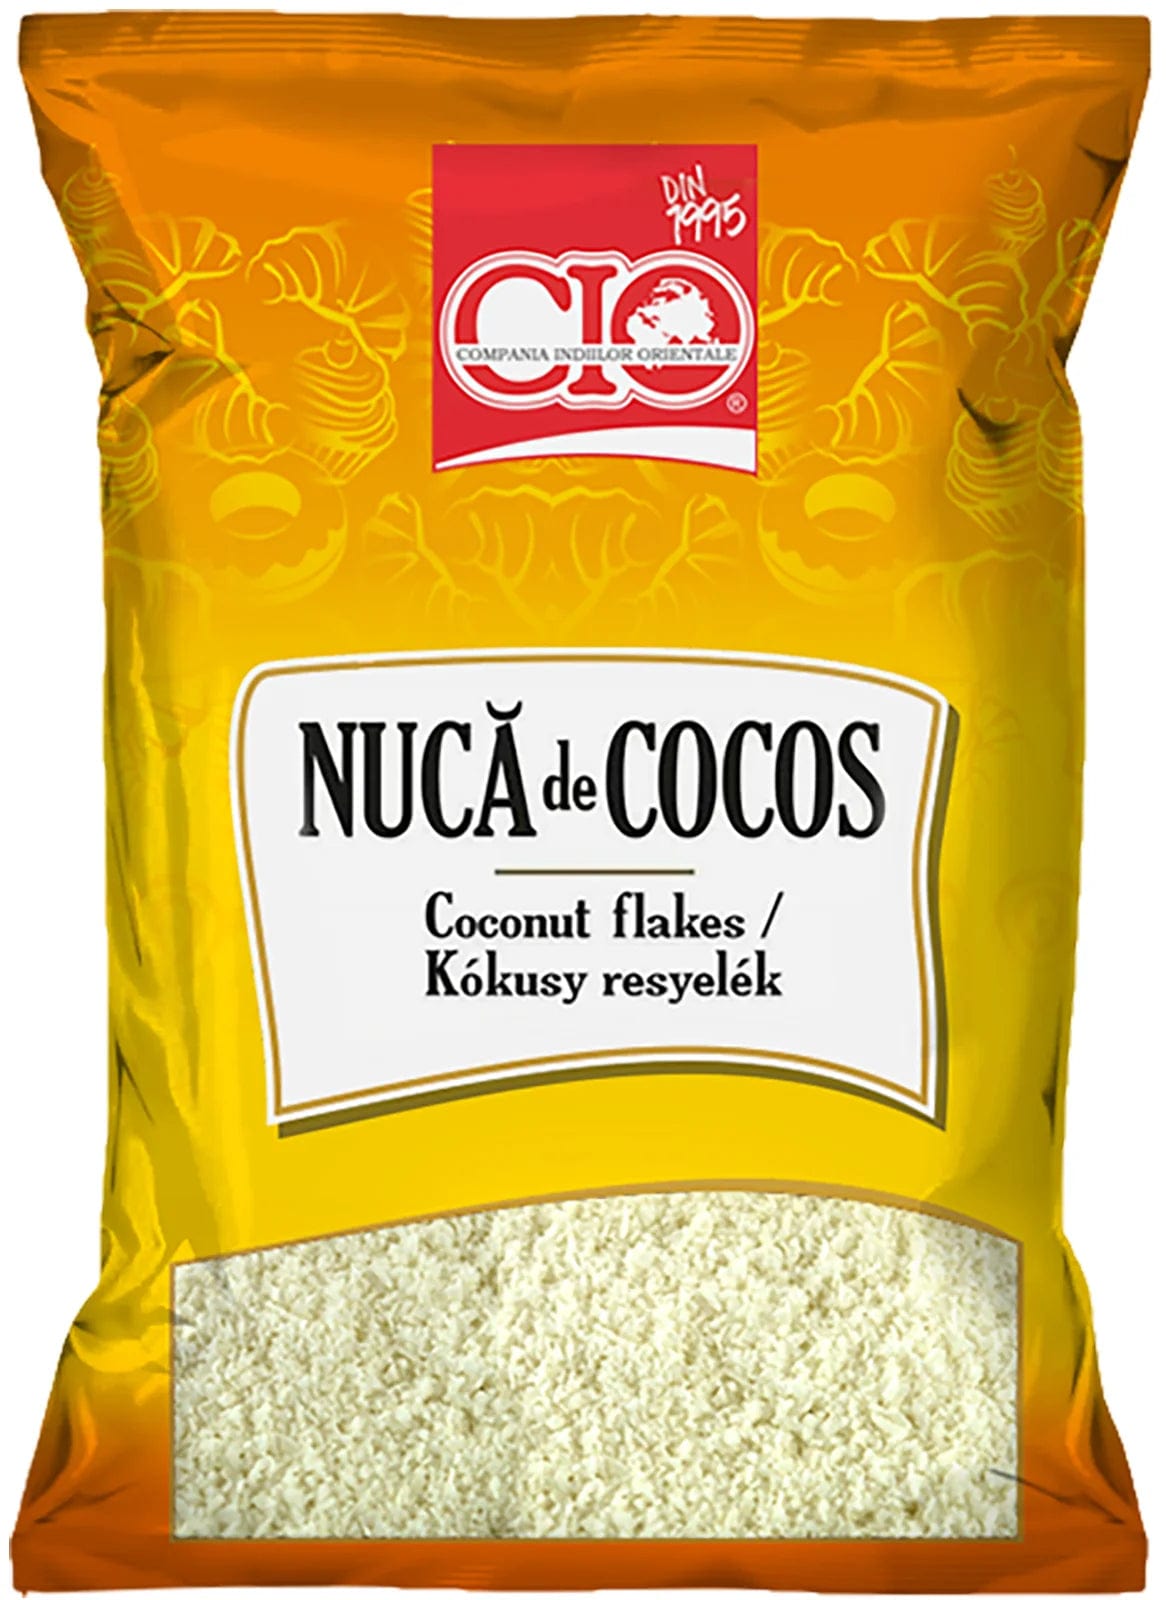 OBLIO DISCOUNTER CIO NUCA DE COCOS 100G (10 BUC)